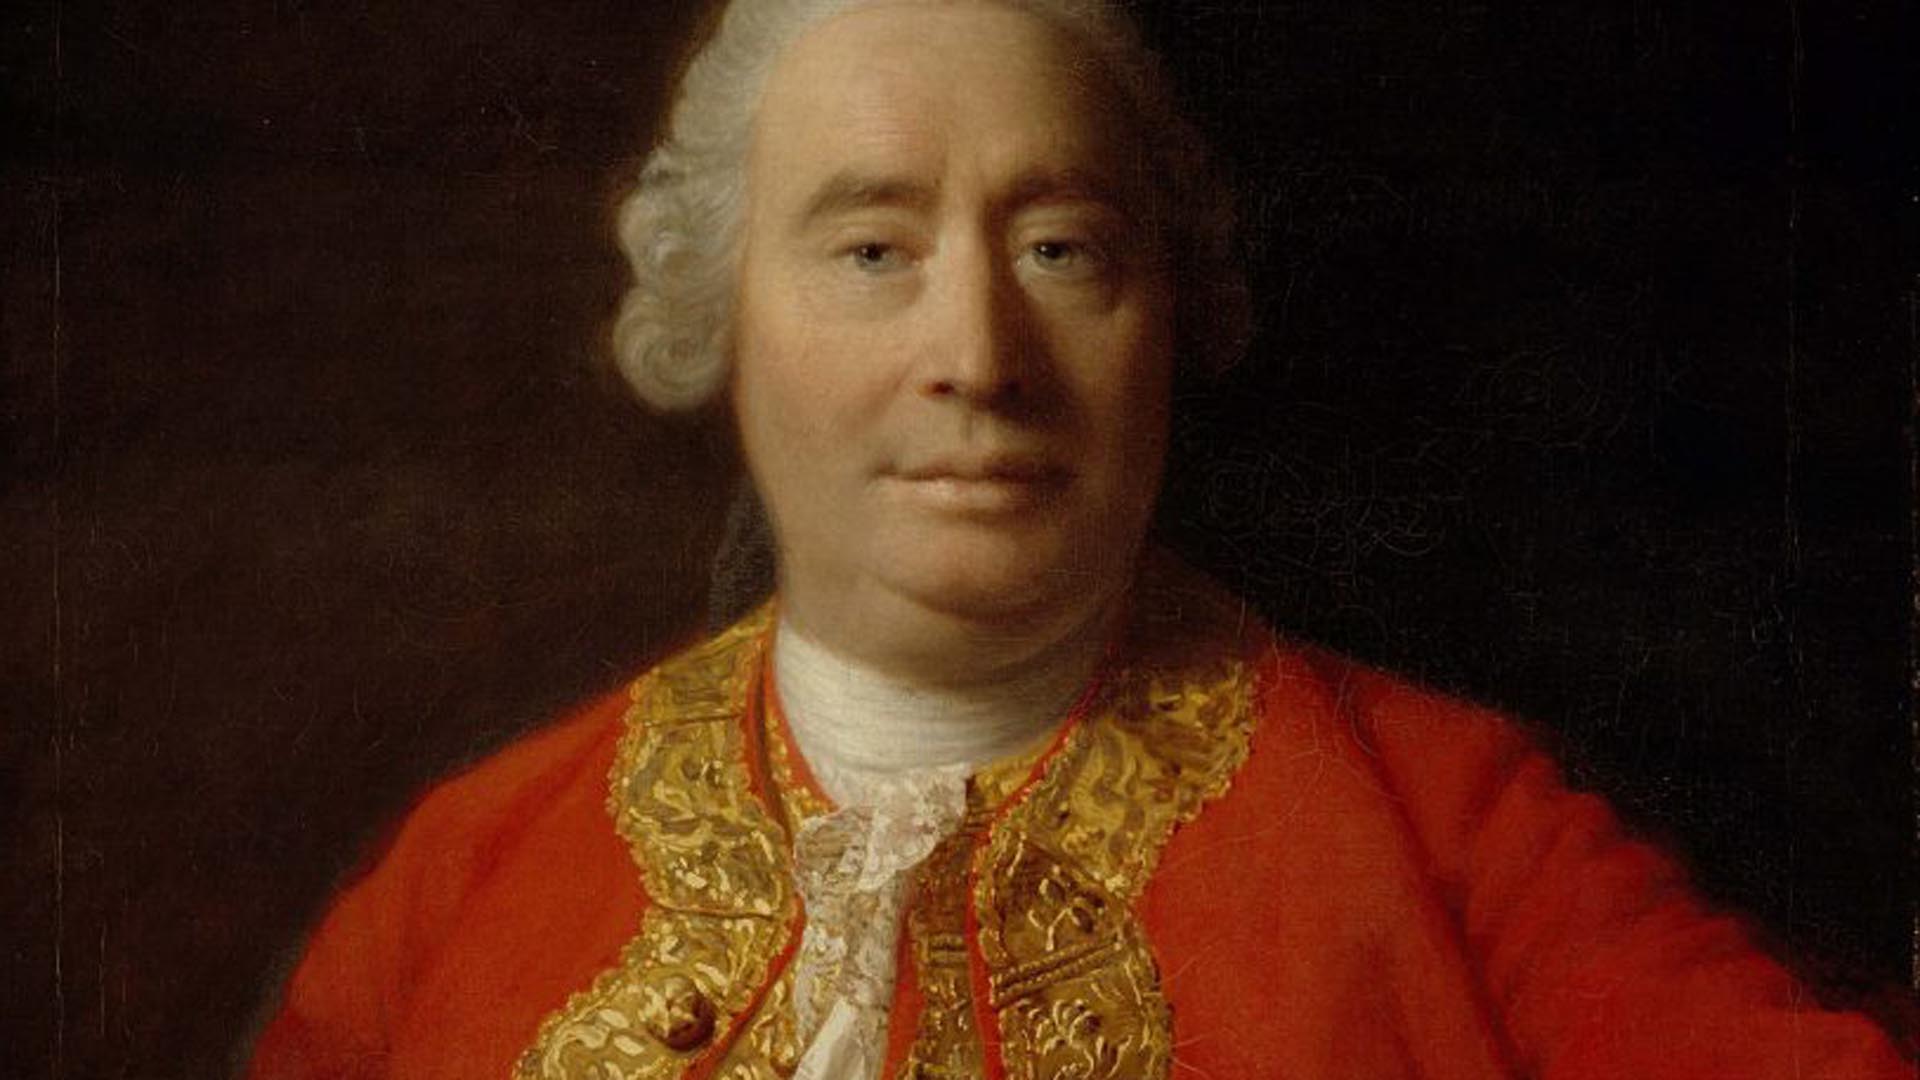 David Hume, retratado por Allan Ramsay